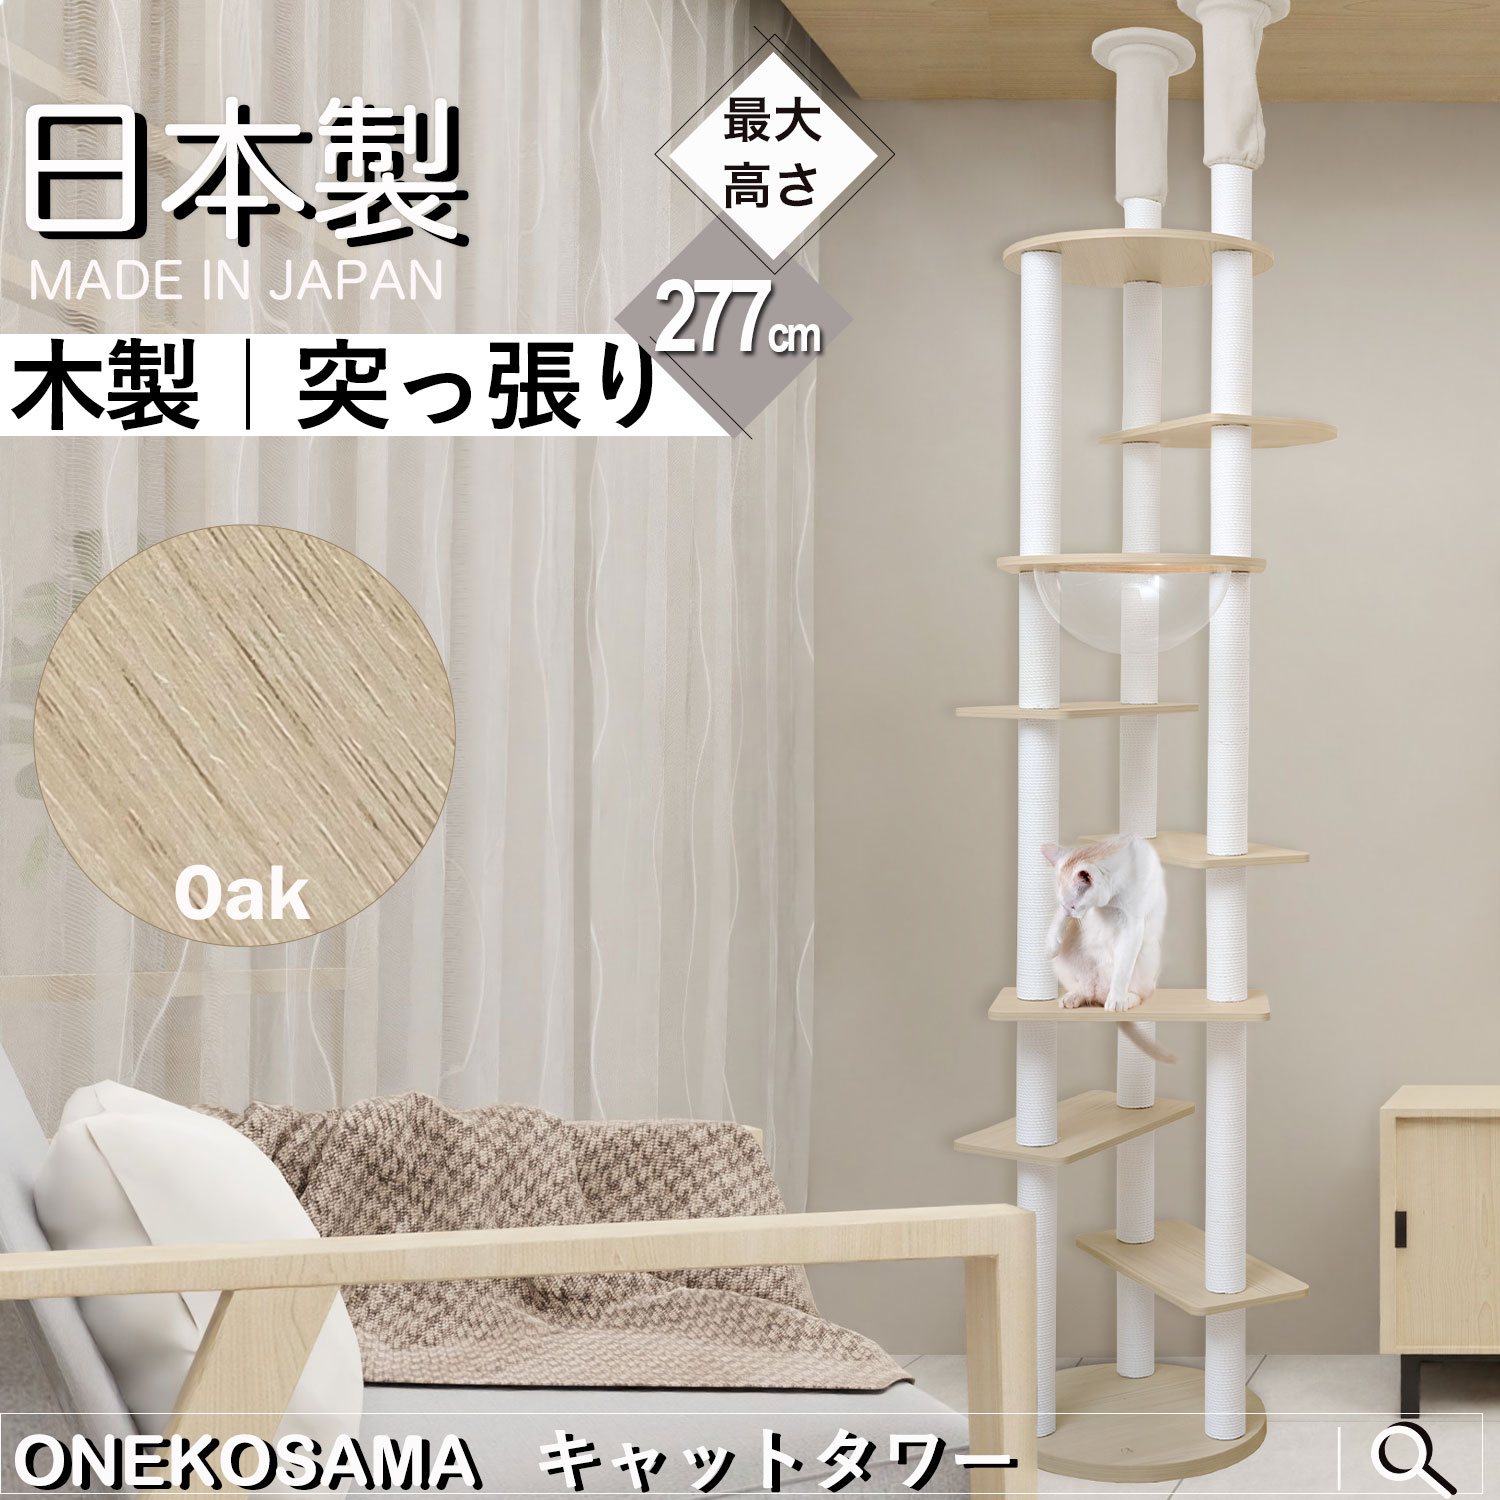 キャットタワー 日本製 木製 突っ張り ONEKOSAMA 宇宙船 猫 ねこ 